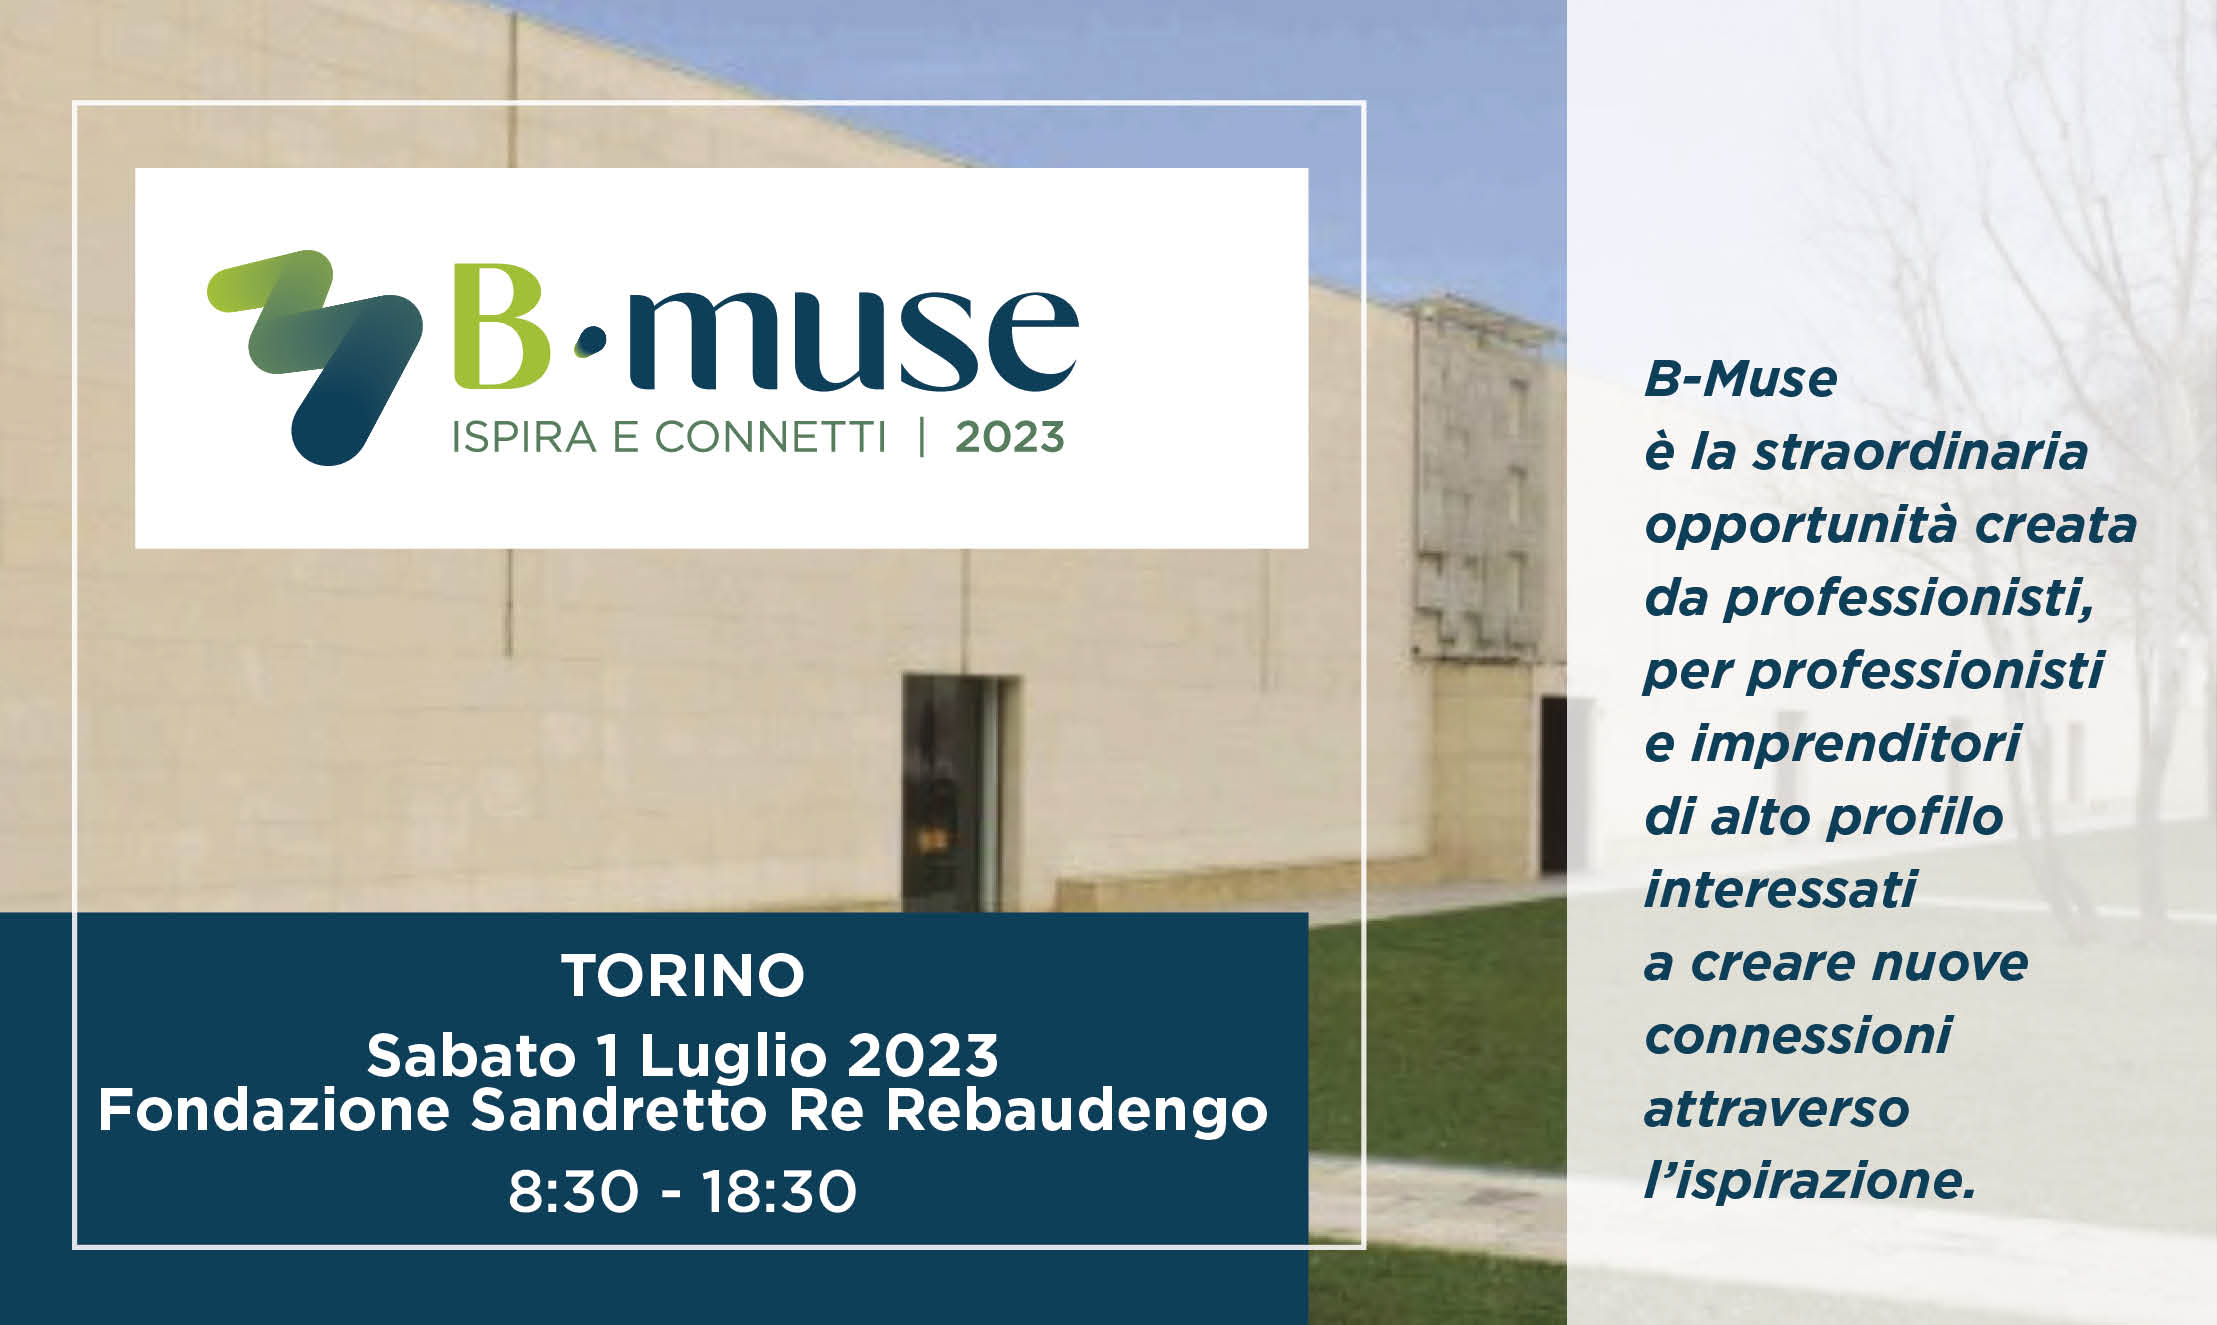 B-muse 2023 Torino - ISPIRA E CONNETTI. Per condividere le proprie idee ed incontrare nuovi clienti,